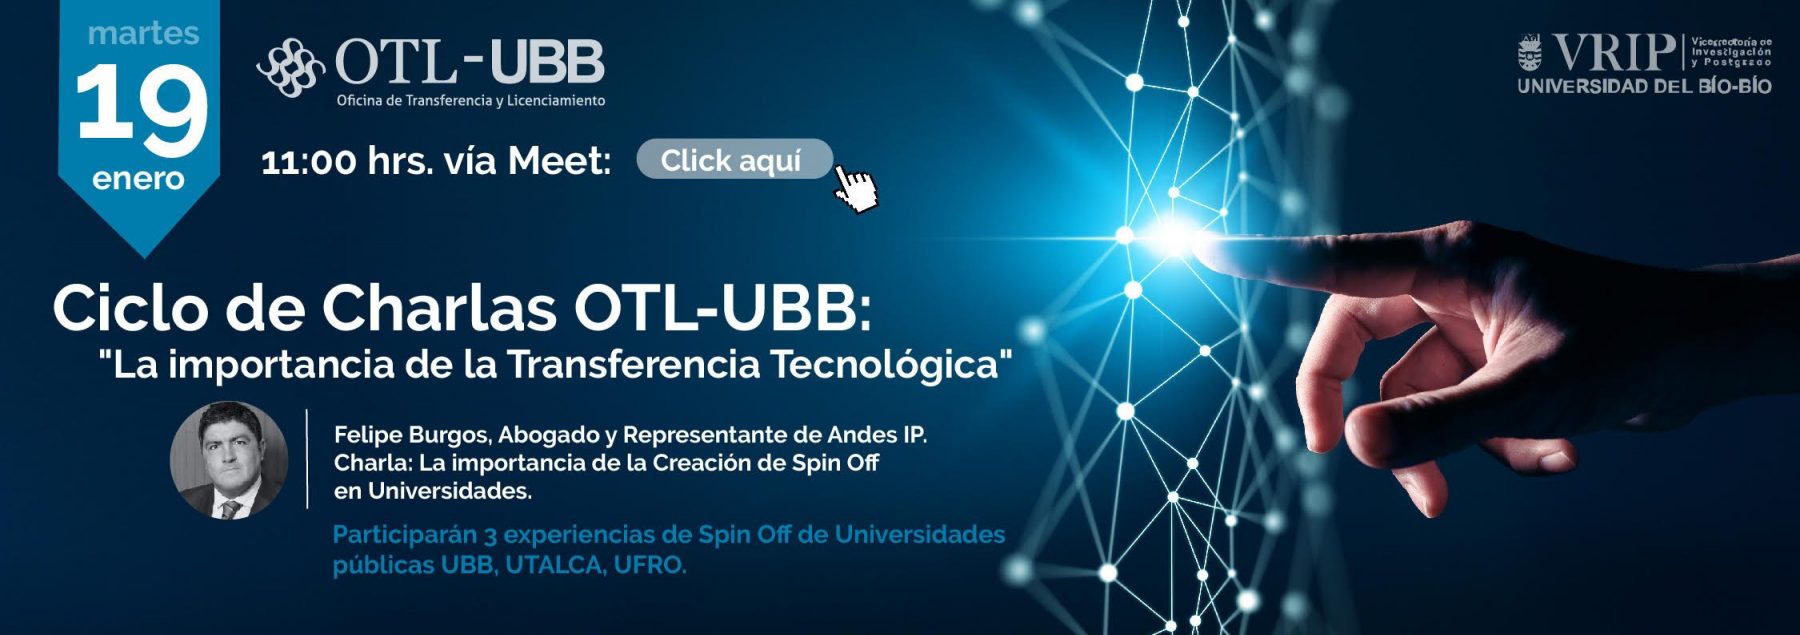 Ciclo de Charlas OTL UBB: “La importancia de la Transferencia Tecnológica”